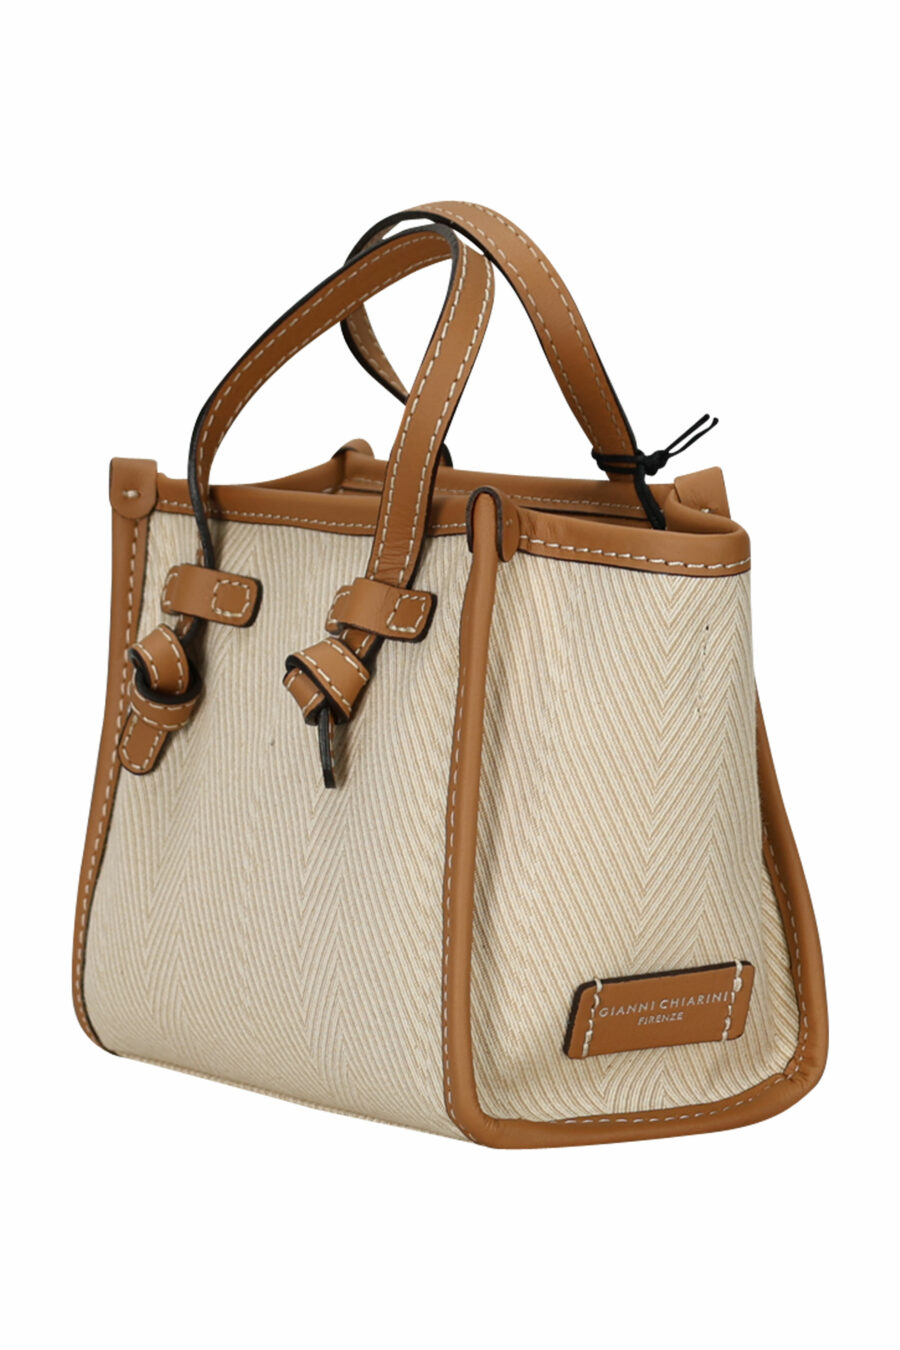 Mini-Shopper-Tasche "Miss Marcella" beige mit braunem und Minilogo - 8057145894386 1